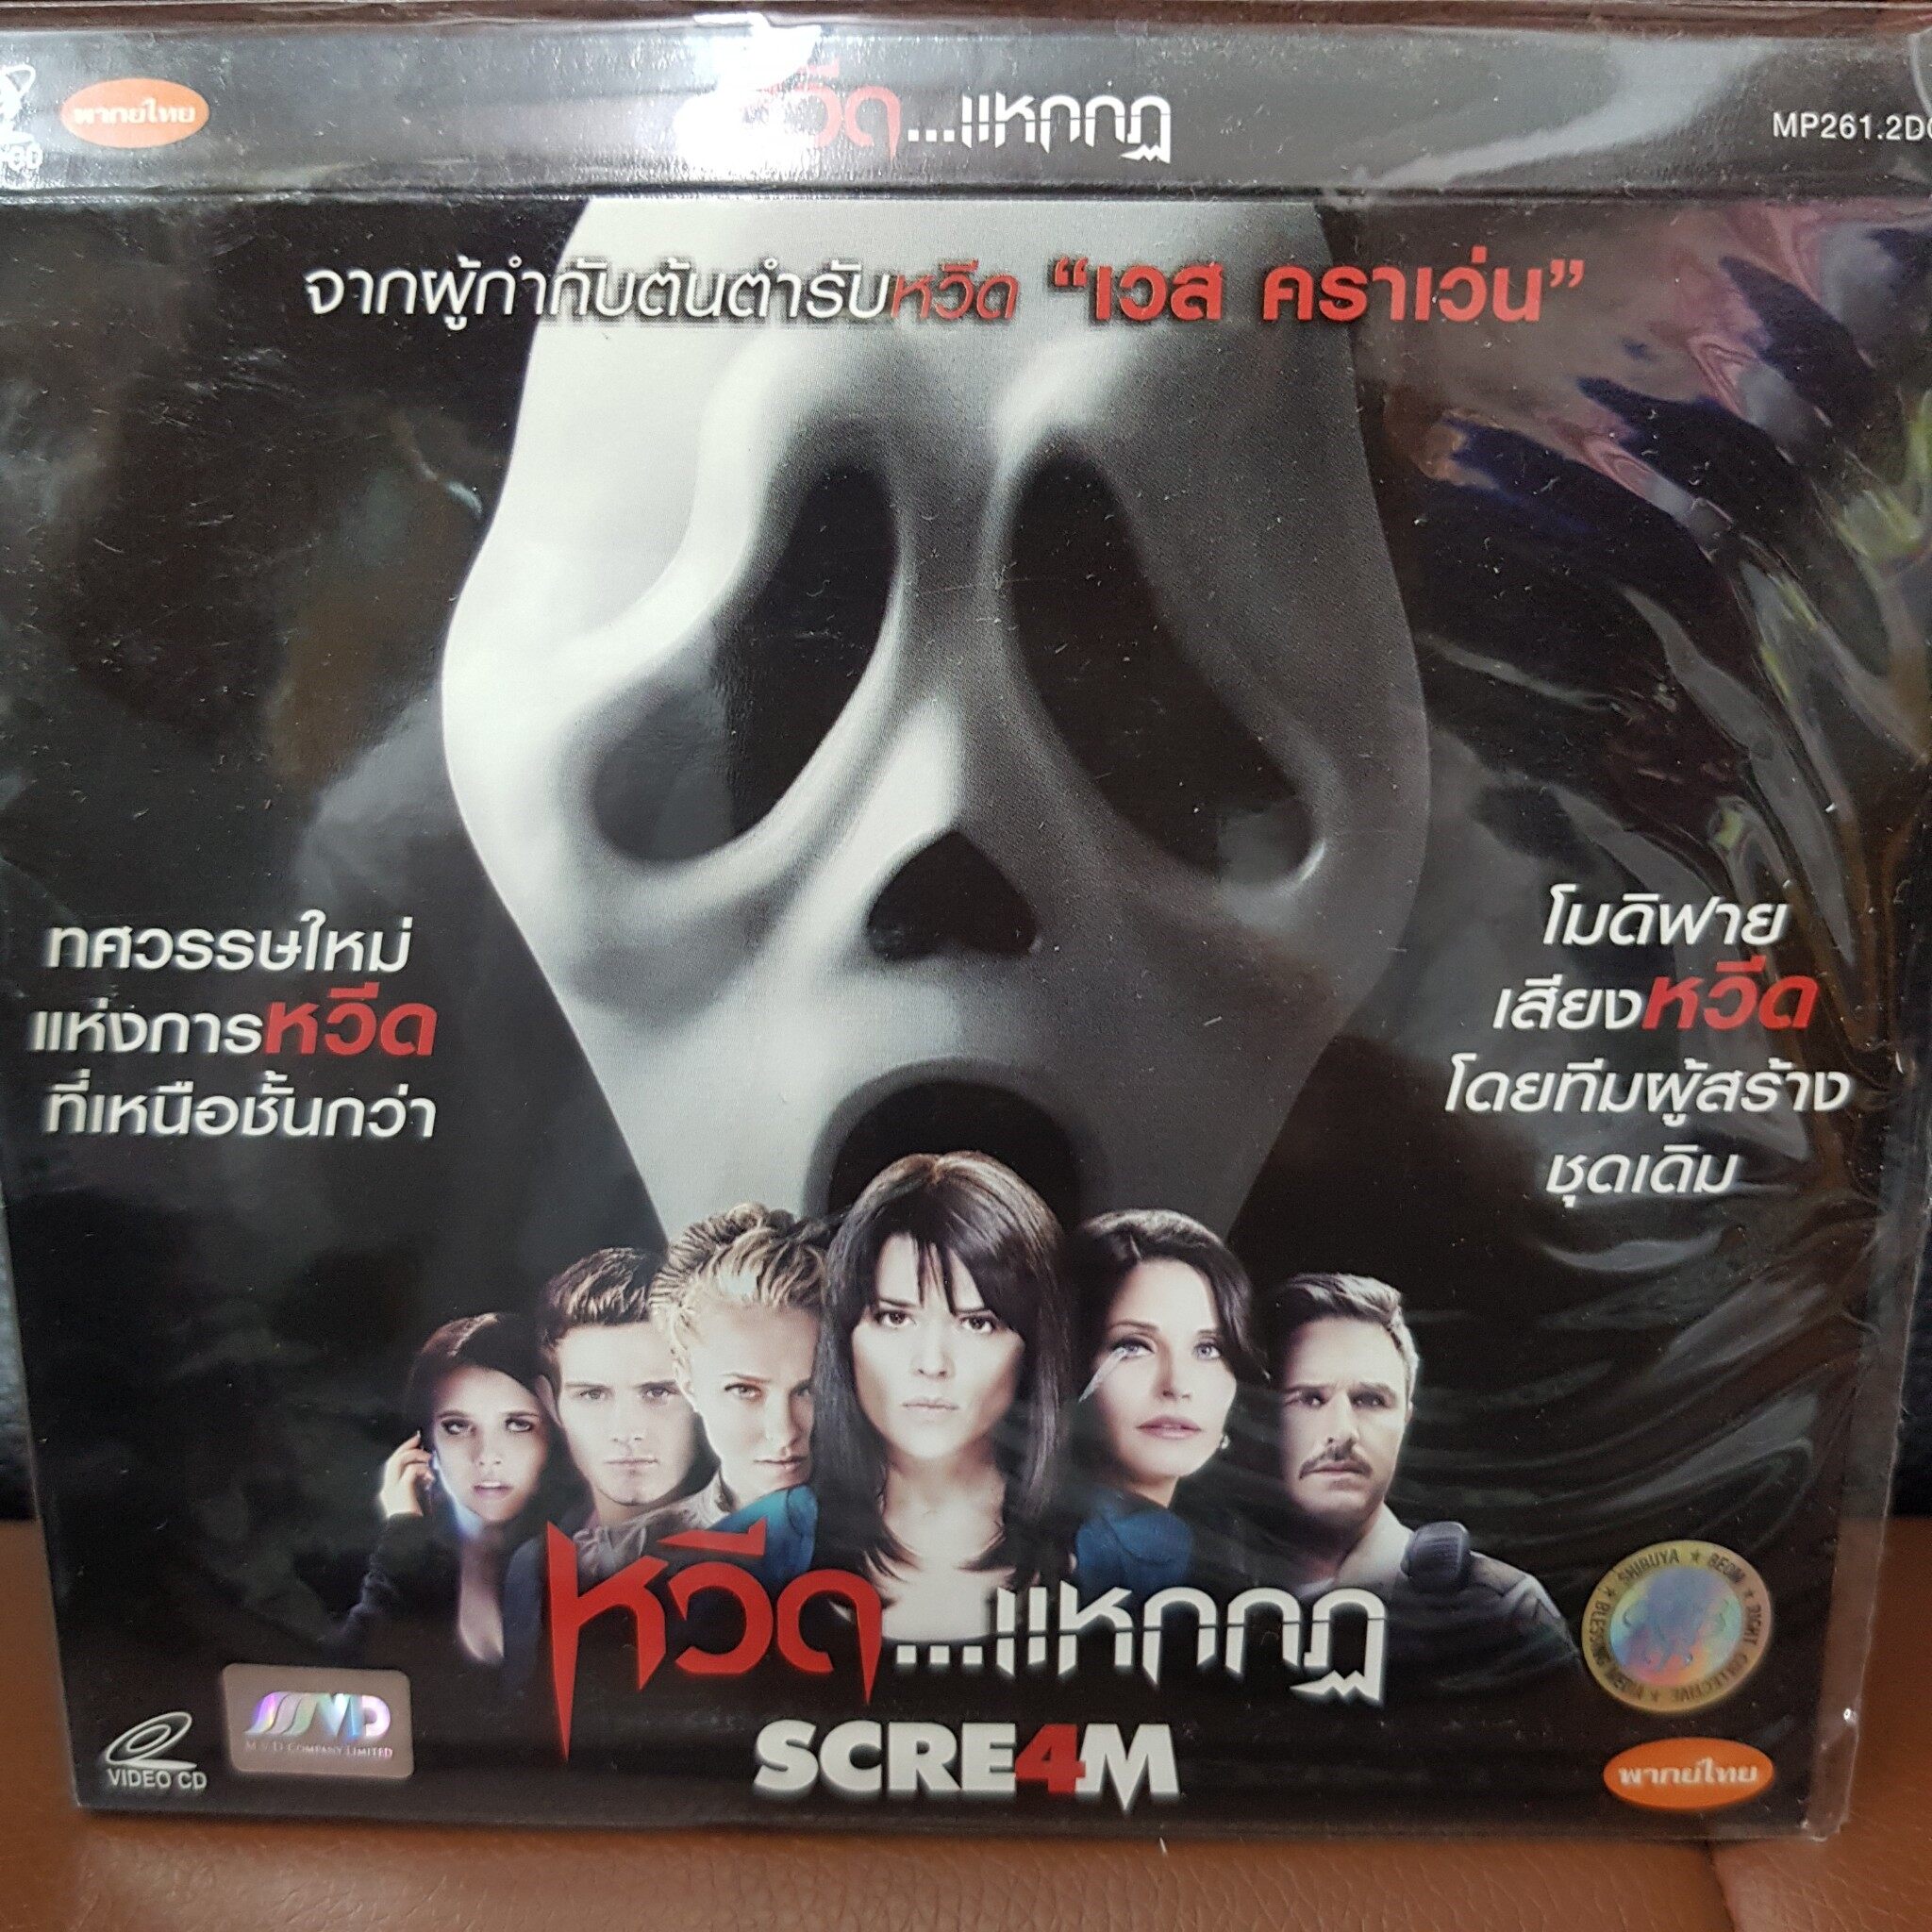 VCD หวีด แหกกฏ SCREAM 4 พากย์ไทย (SBYVCD59-SCREAM4) หนังผี ผี ขนลุก สยองขวัญ ดูหนัง ลึกลับ ลี่ลับ สืบสวน ไขคดี หนังเก่า หายาก วีซีดี ลดราคา ดูหนัง ลิขสิทธิื มาสเตอร์แท้ ภาพยนตร์ cinema theater STARMART